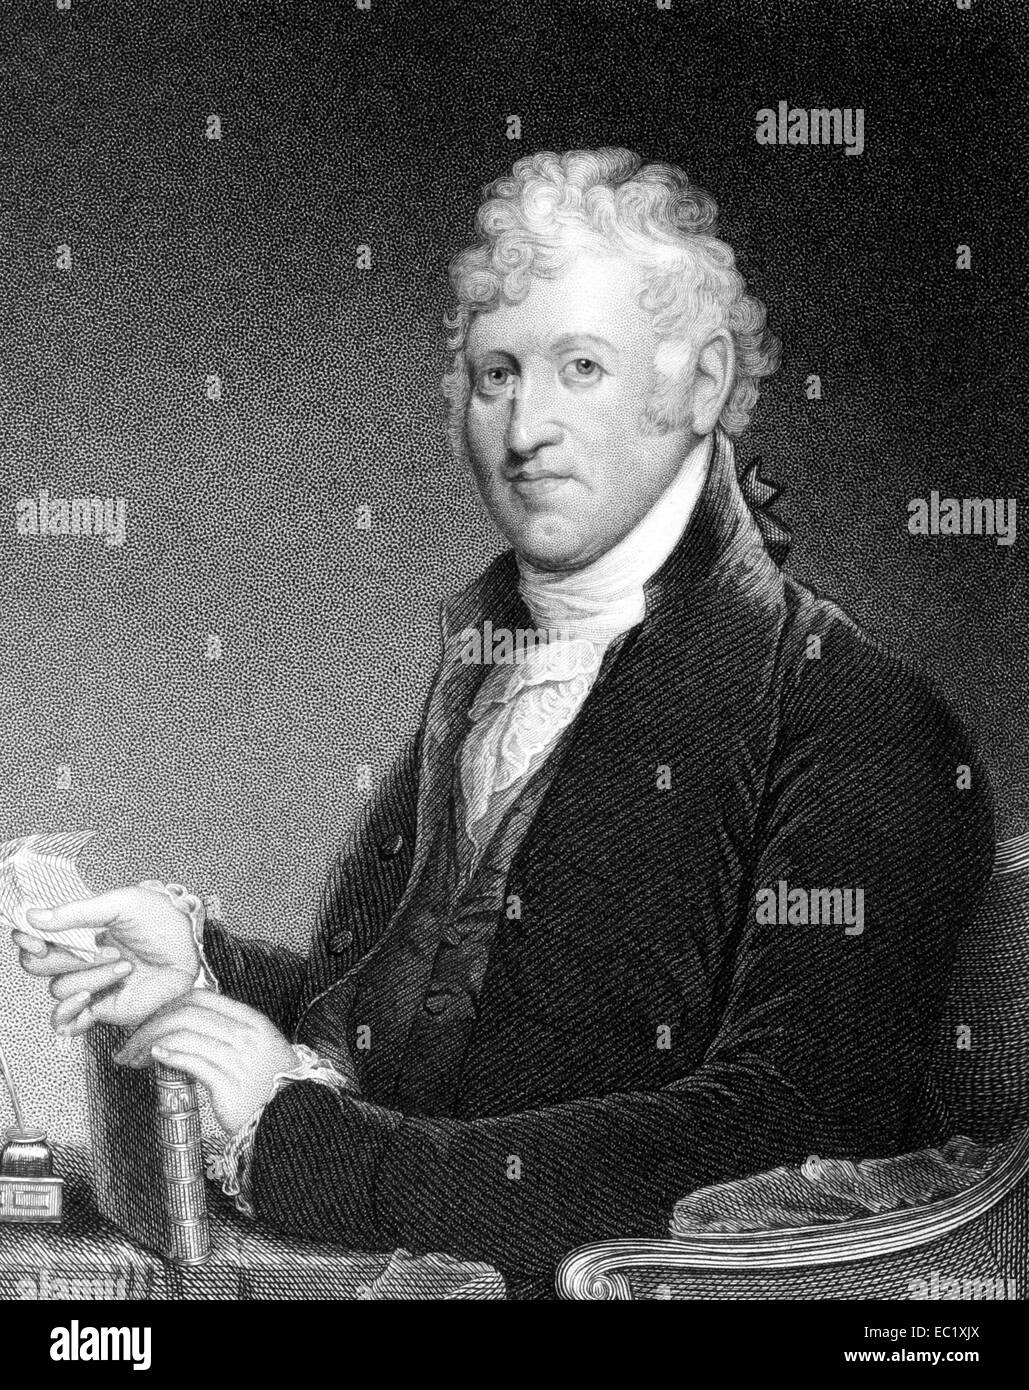 David Humphreys (1752-1818) sur gravure de 1835. Le colonel de la guerre d'Indépendance américaine. Banque D'Images